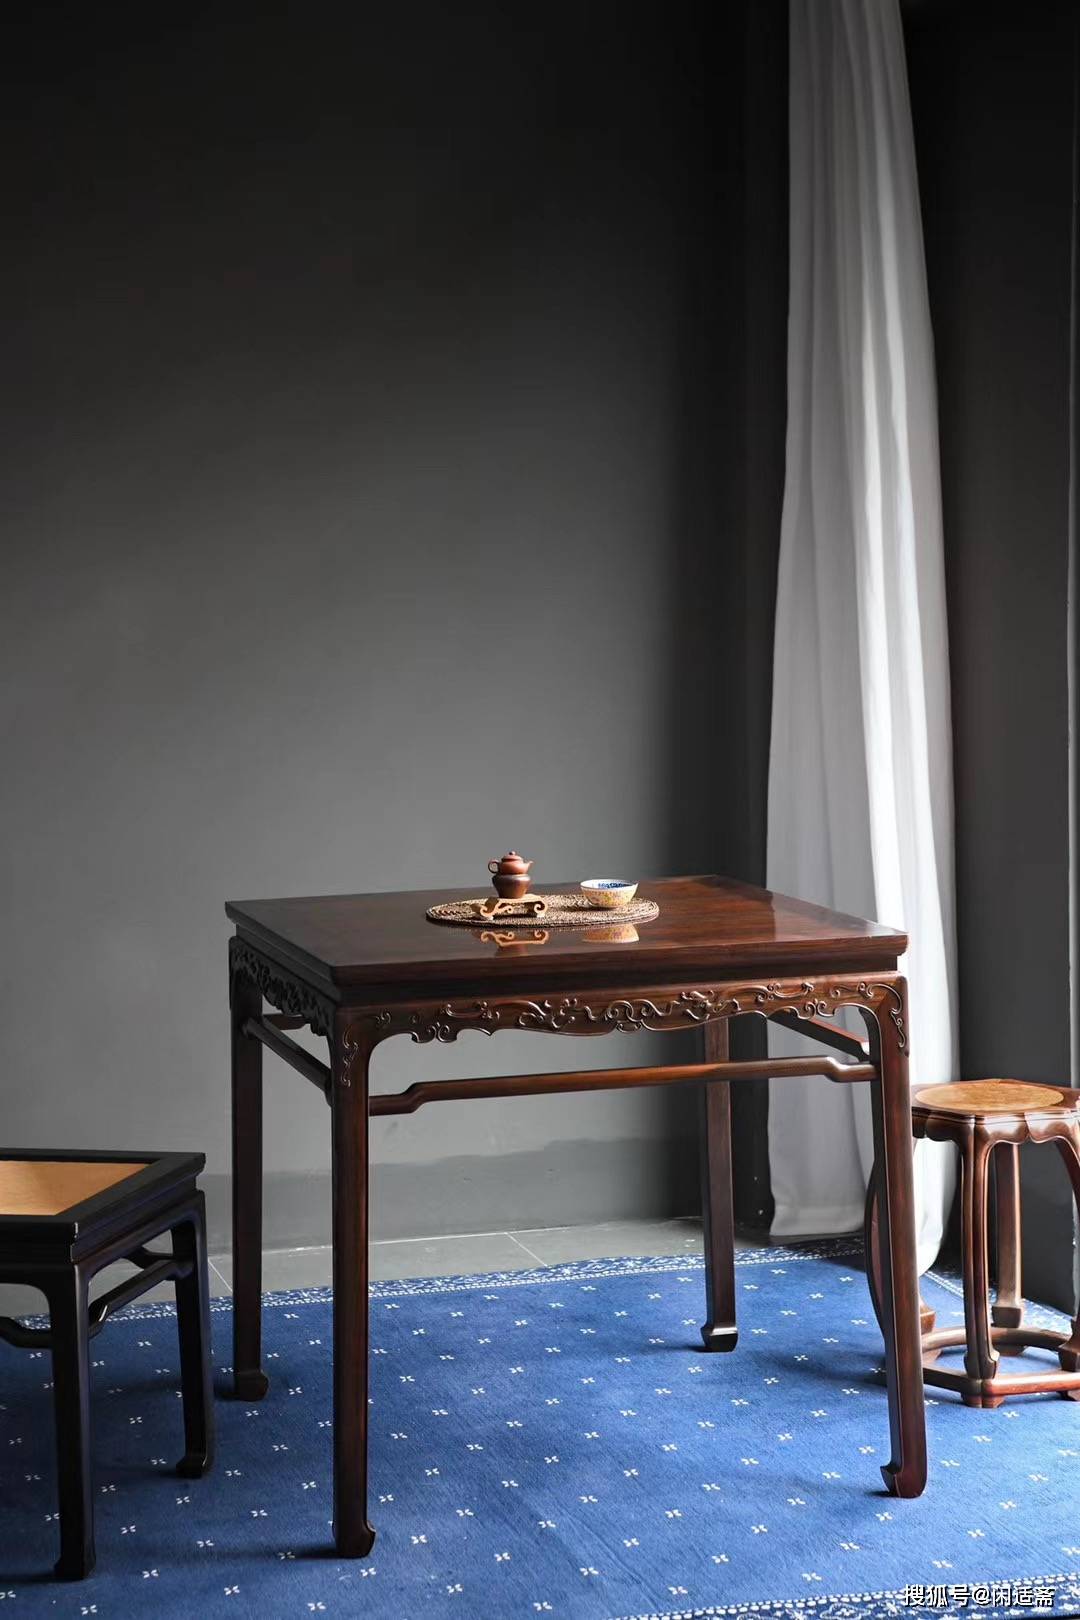 原创明式家具,螭龙纹休闲方桌,红木家具